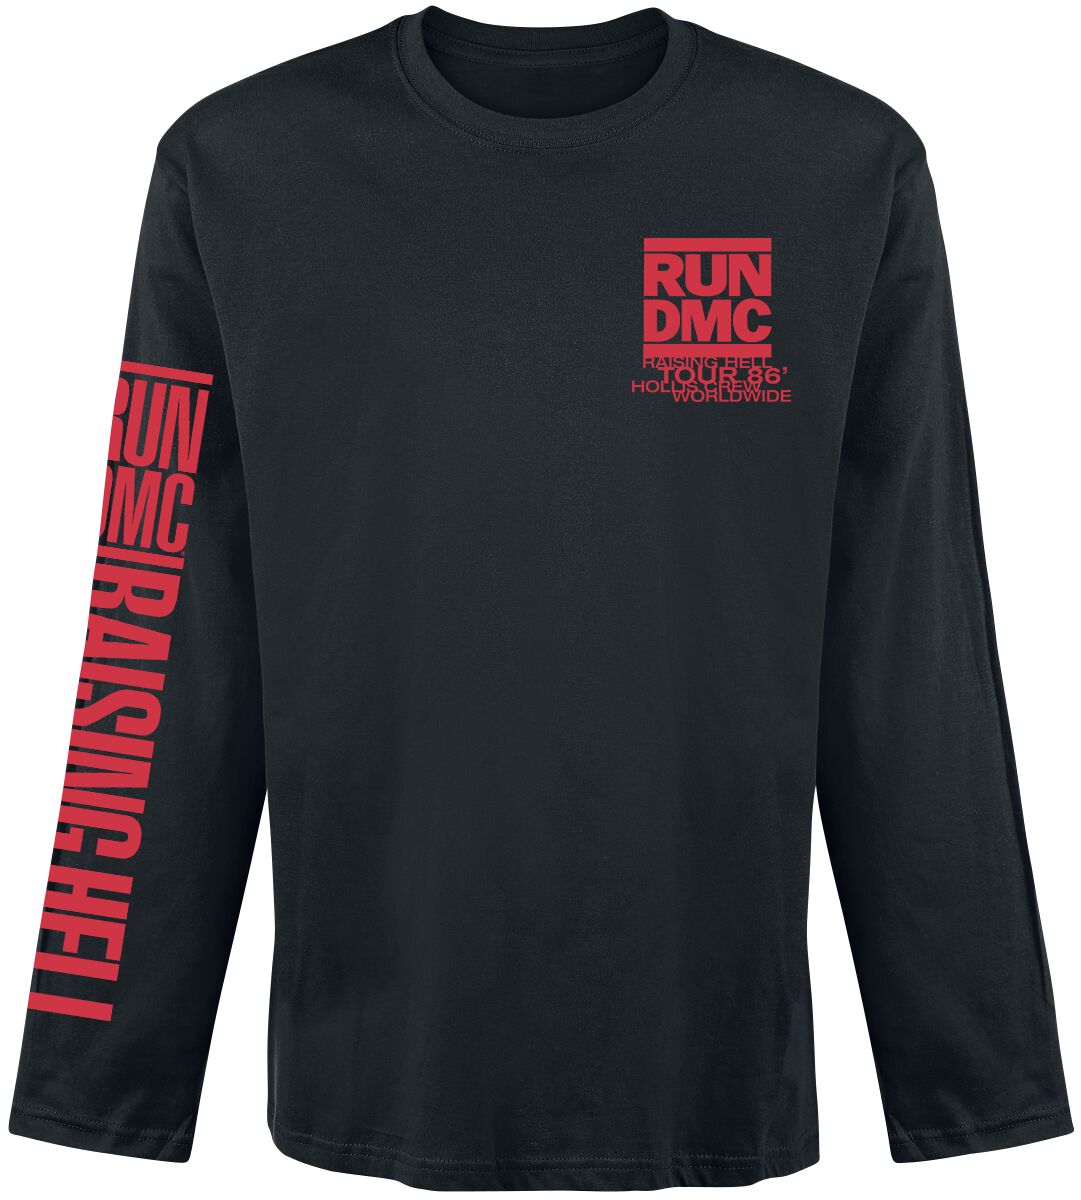 Run DMC Langarmshirt - Raising Hell Tour 86 - S bis XXL - für Männer - Größe M - schwarz  - Lizenziertes Merchandise!